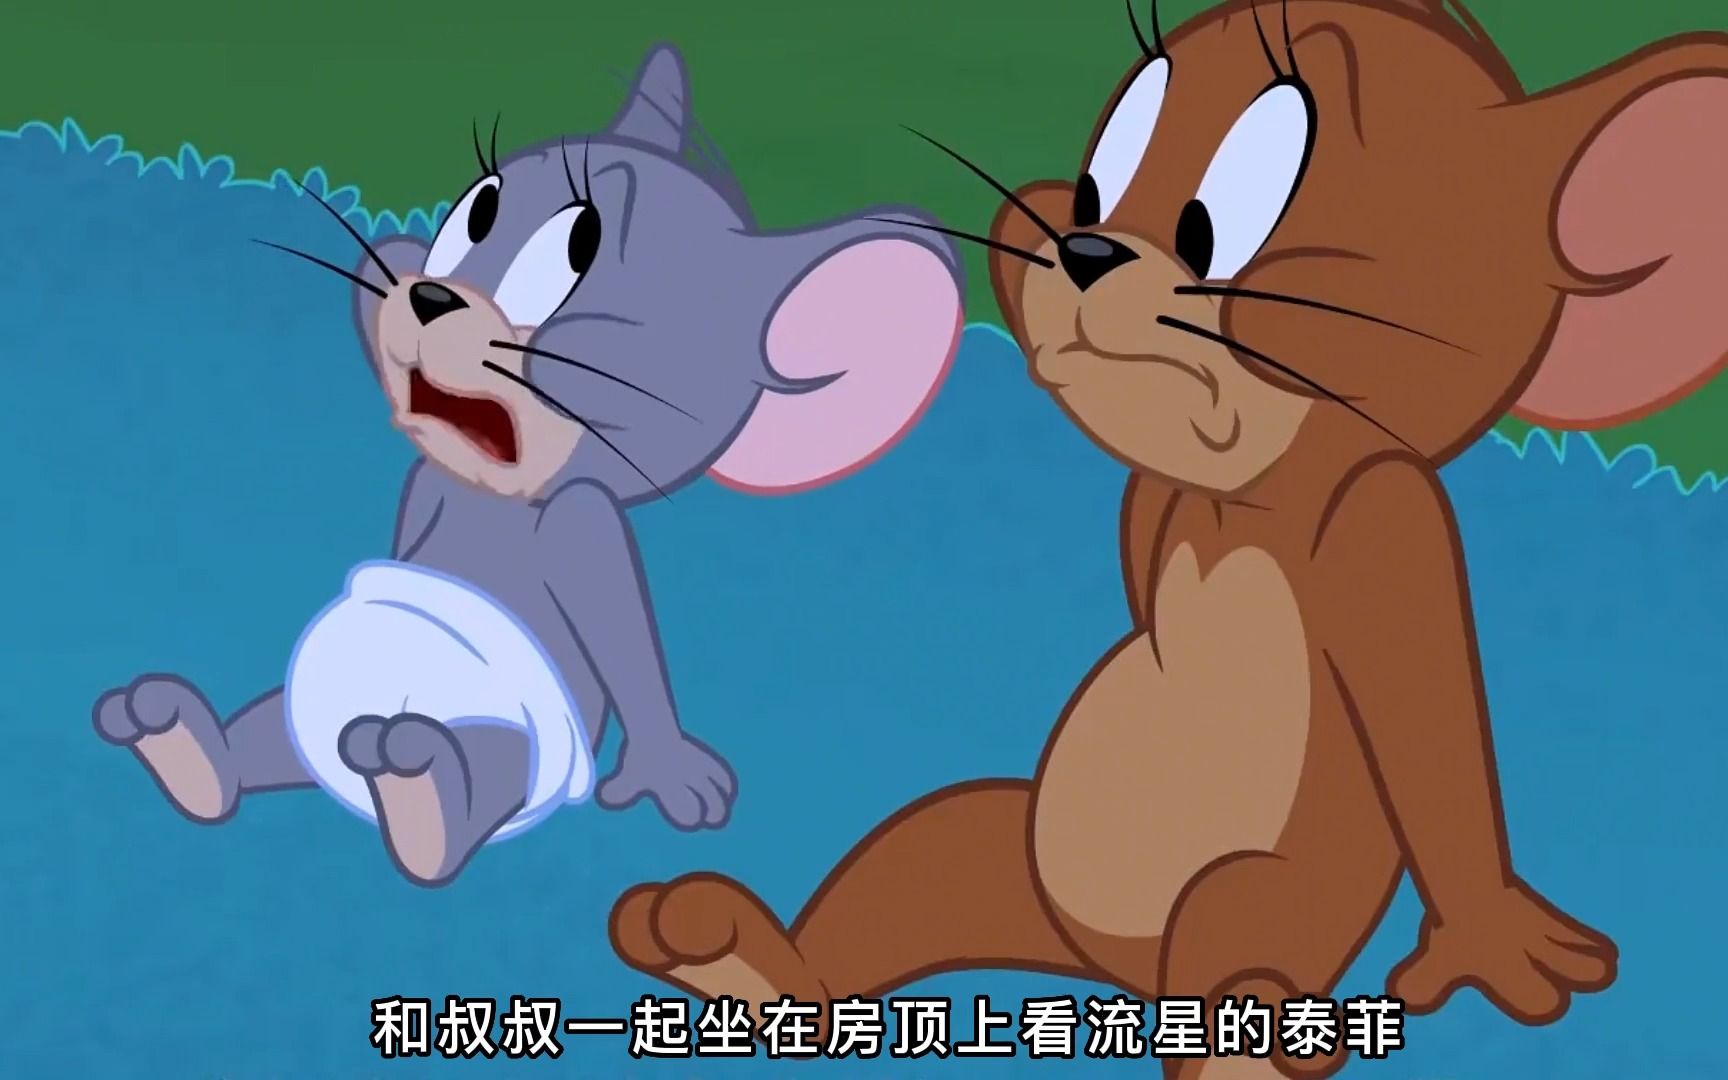 猫和老鼠:汤姆竟被杰瑞的小侄子玩弄于股掌之上